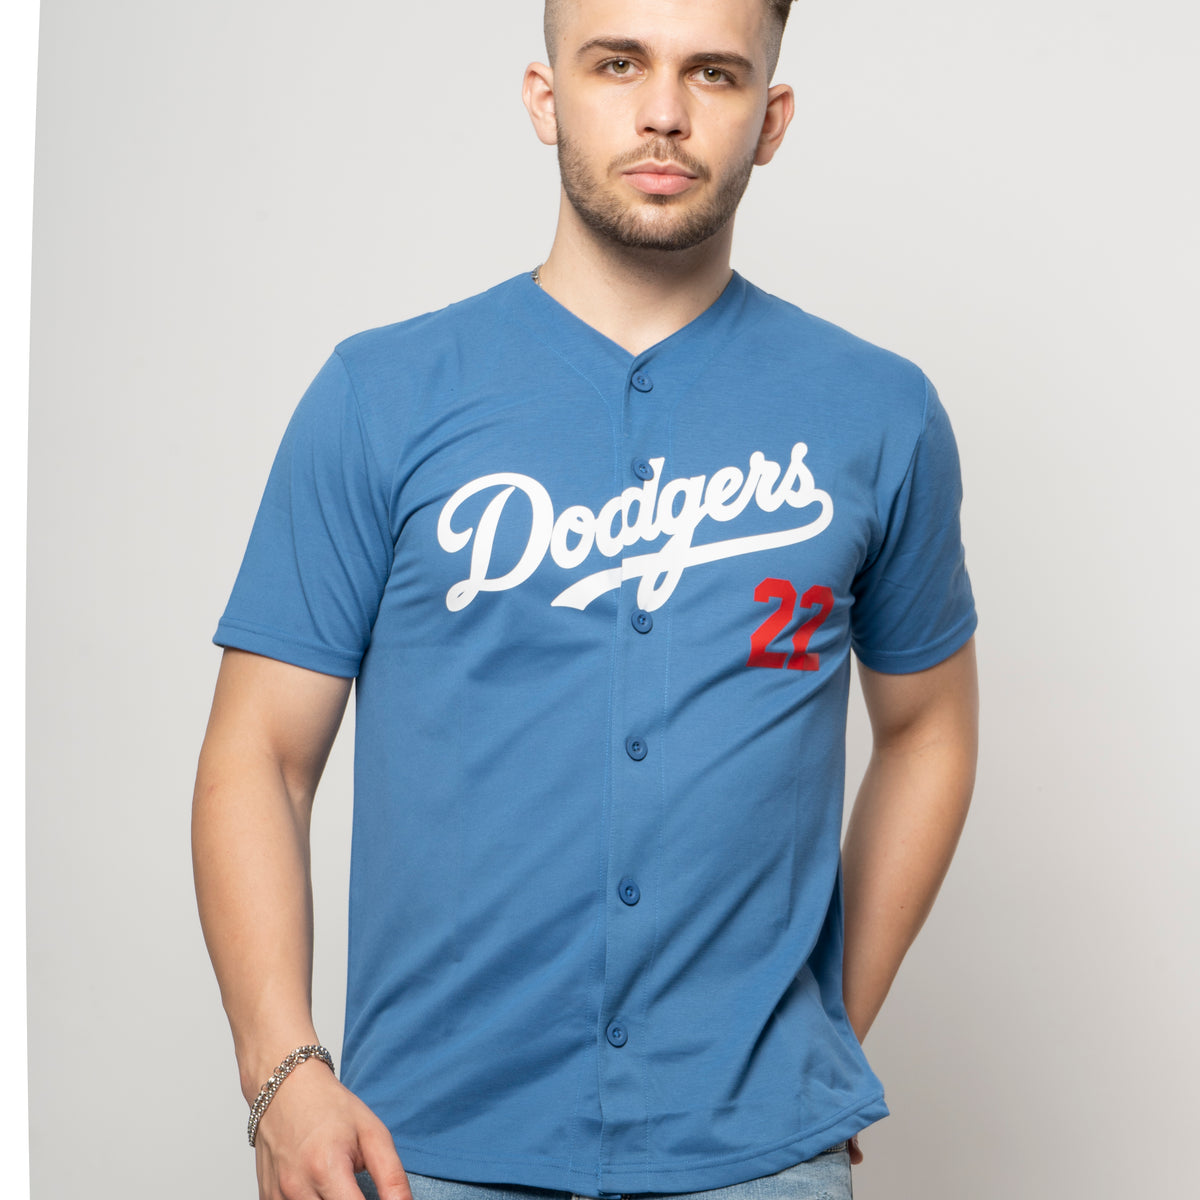 Blue Dodgers Button Down Baseball Jersey S